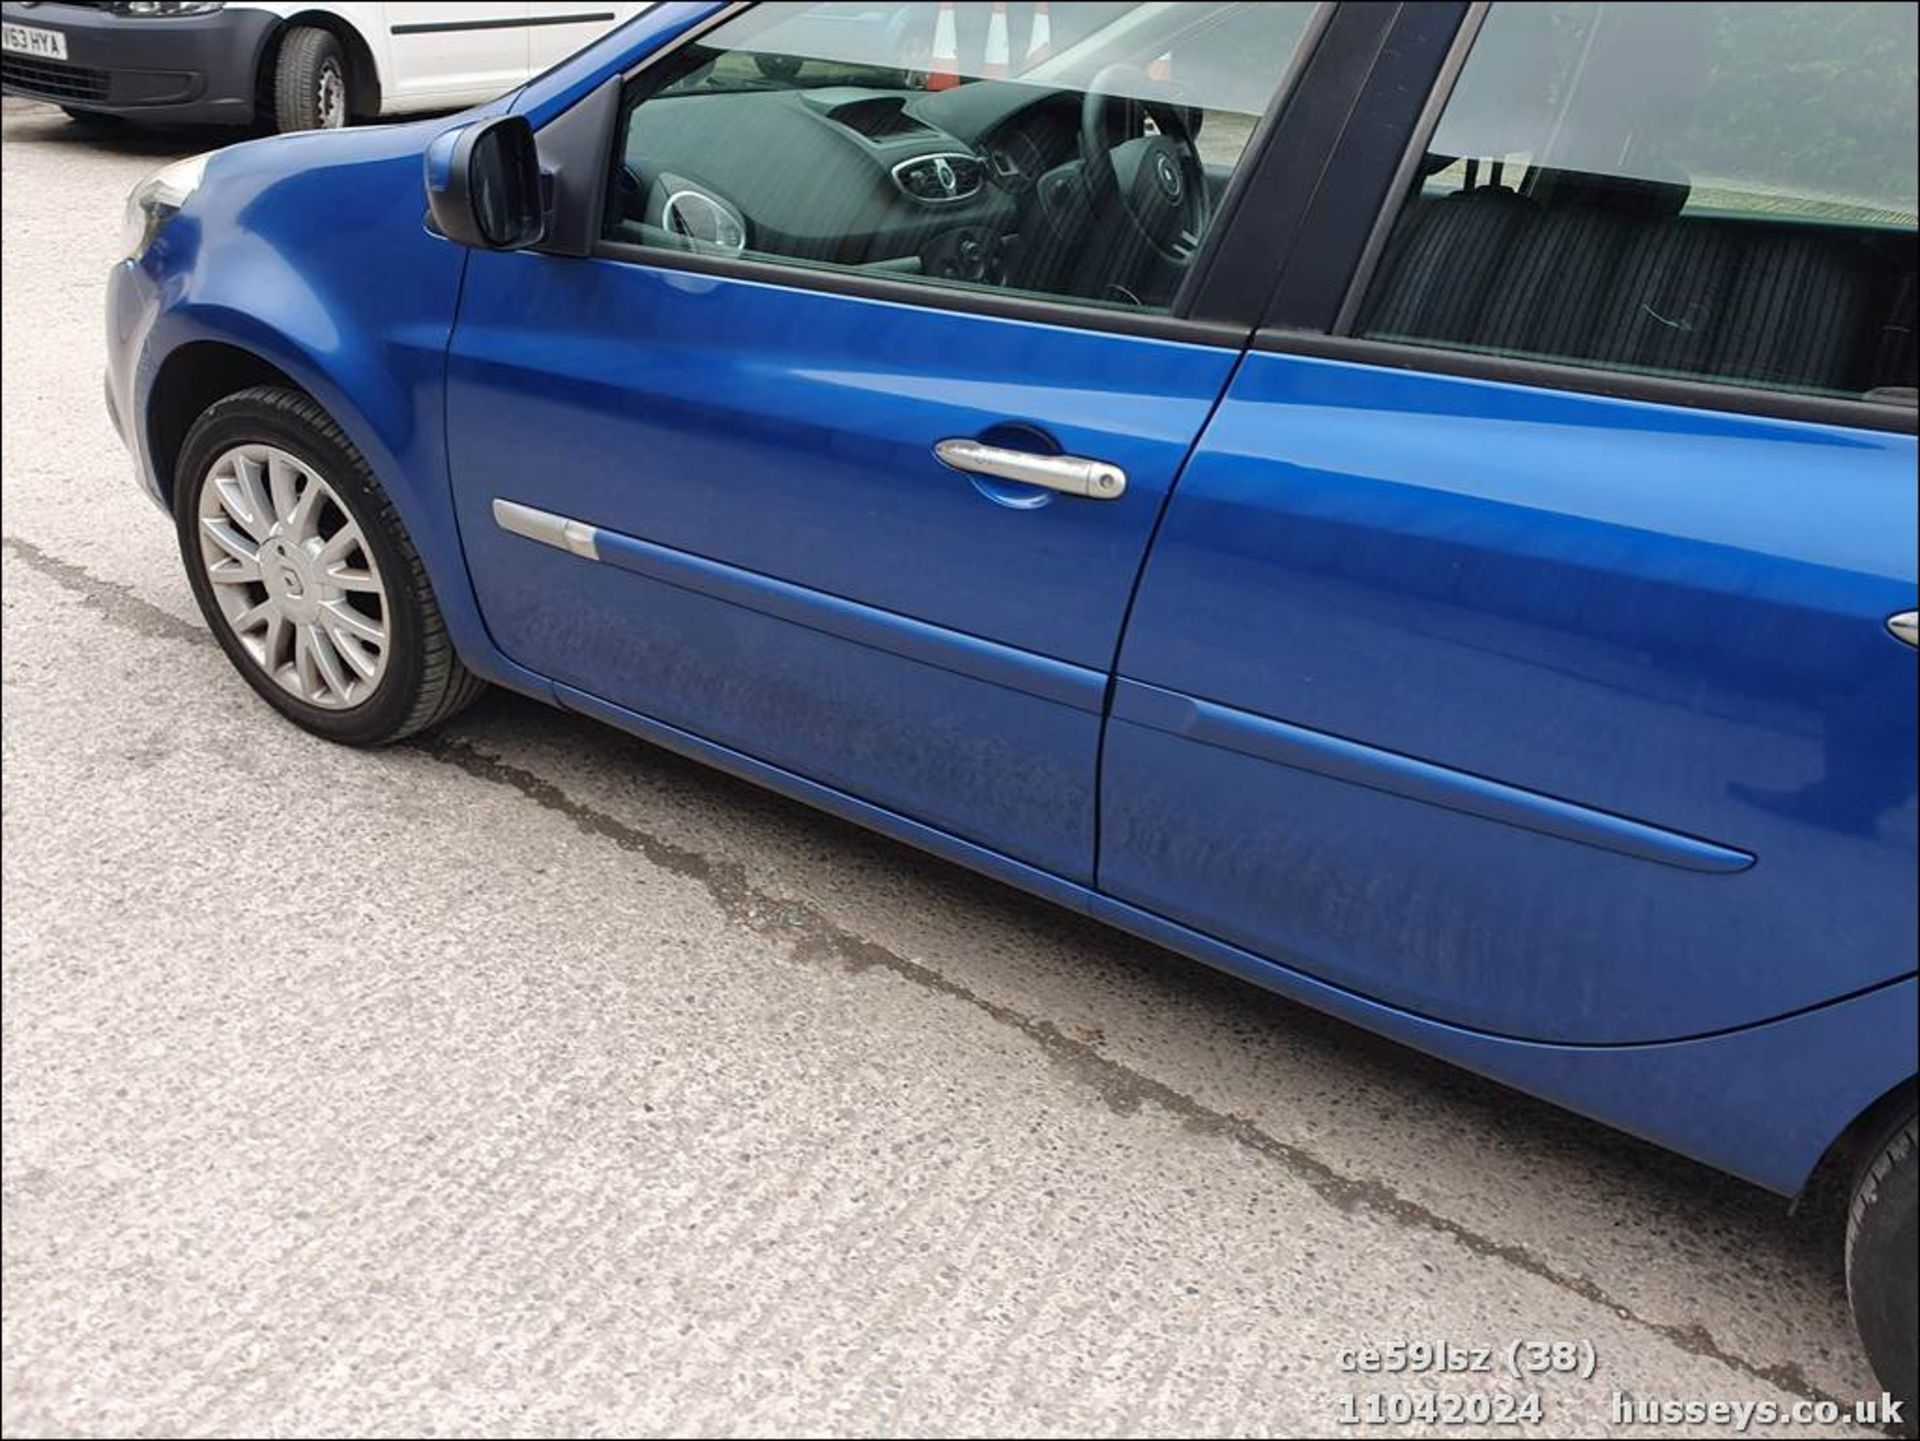 09/59 RENAULT CLIO DYNAMIQUE DCI - 1461cc 5dr Hatchback (Blue, 126k) - Image 39 of 47